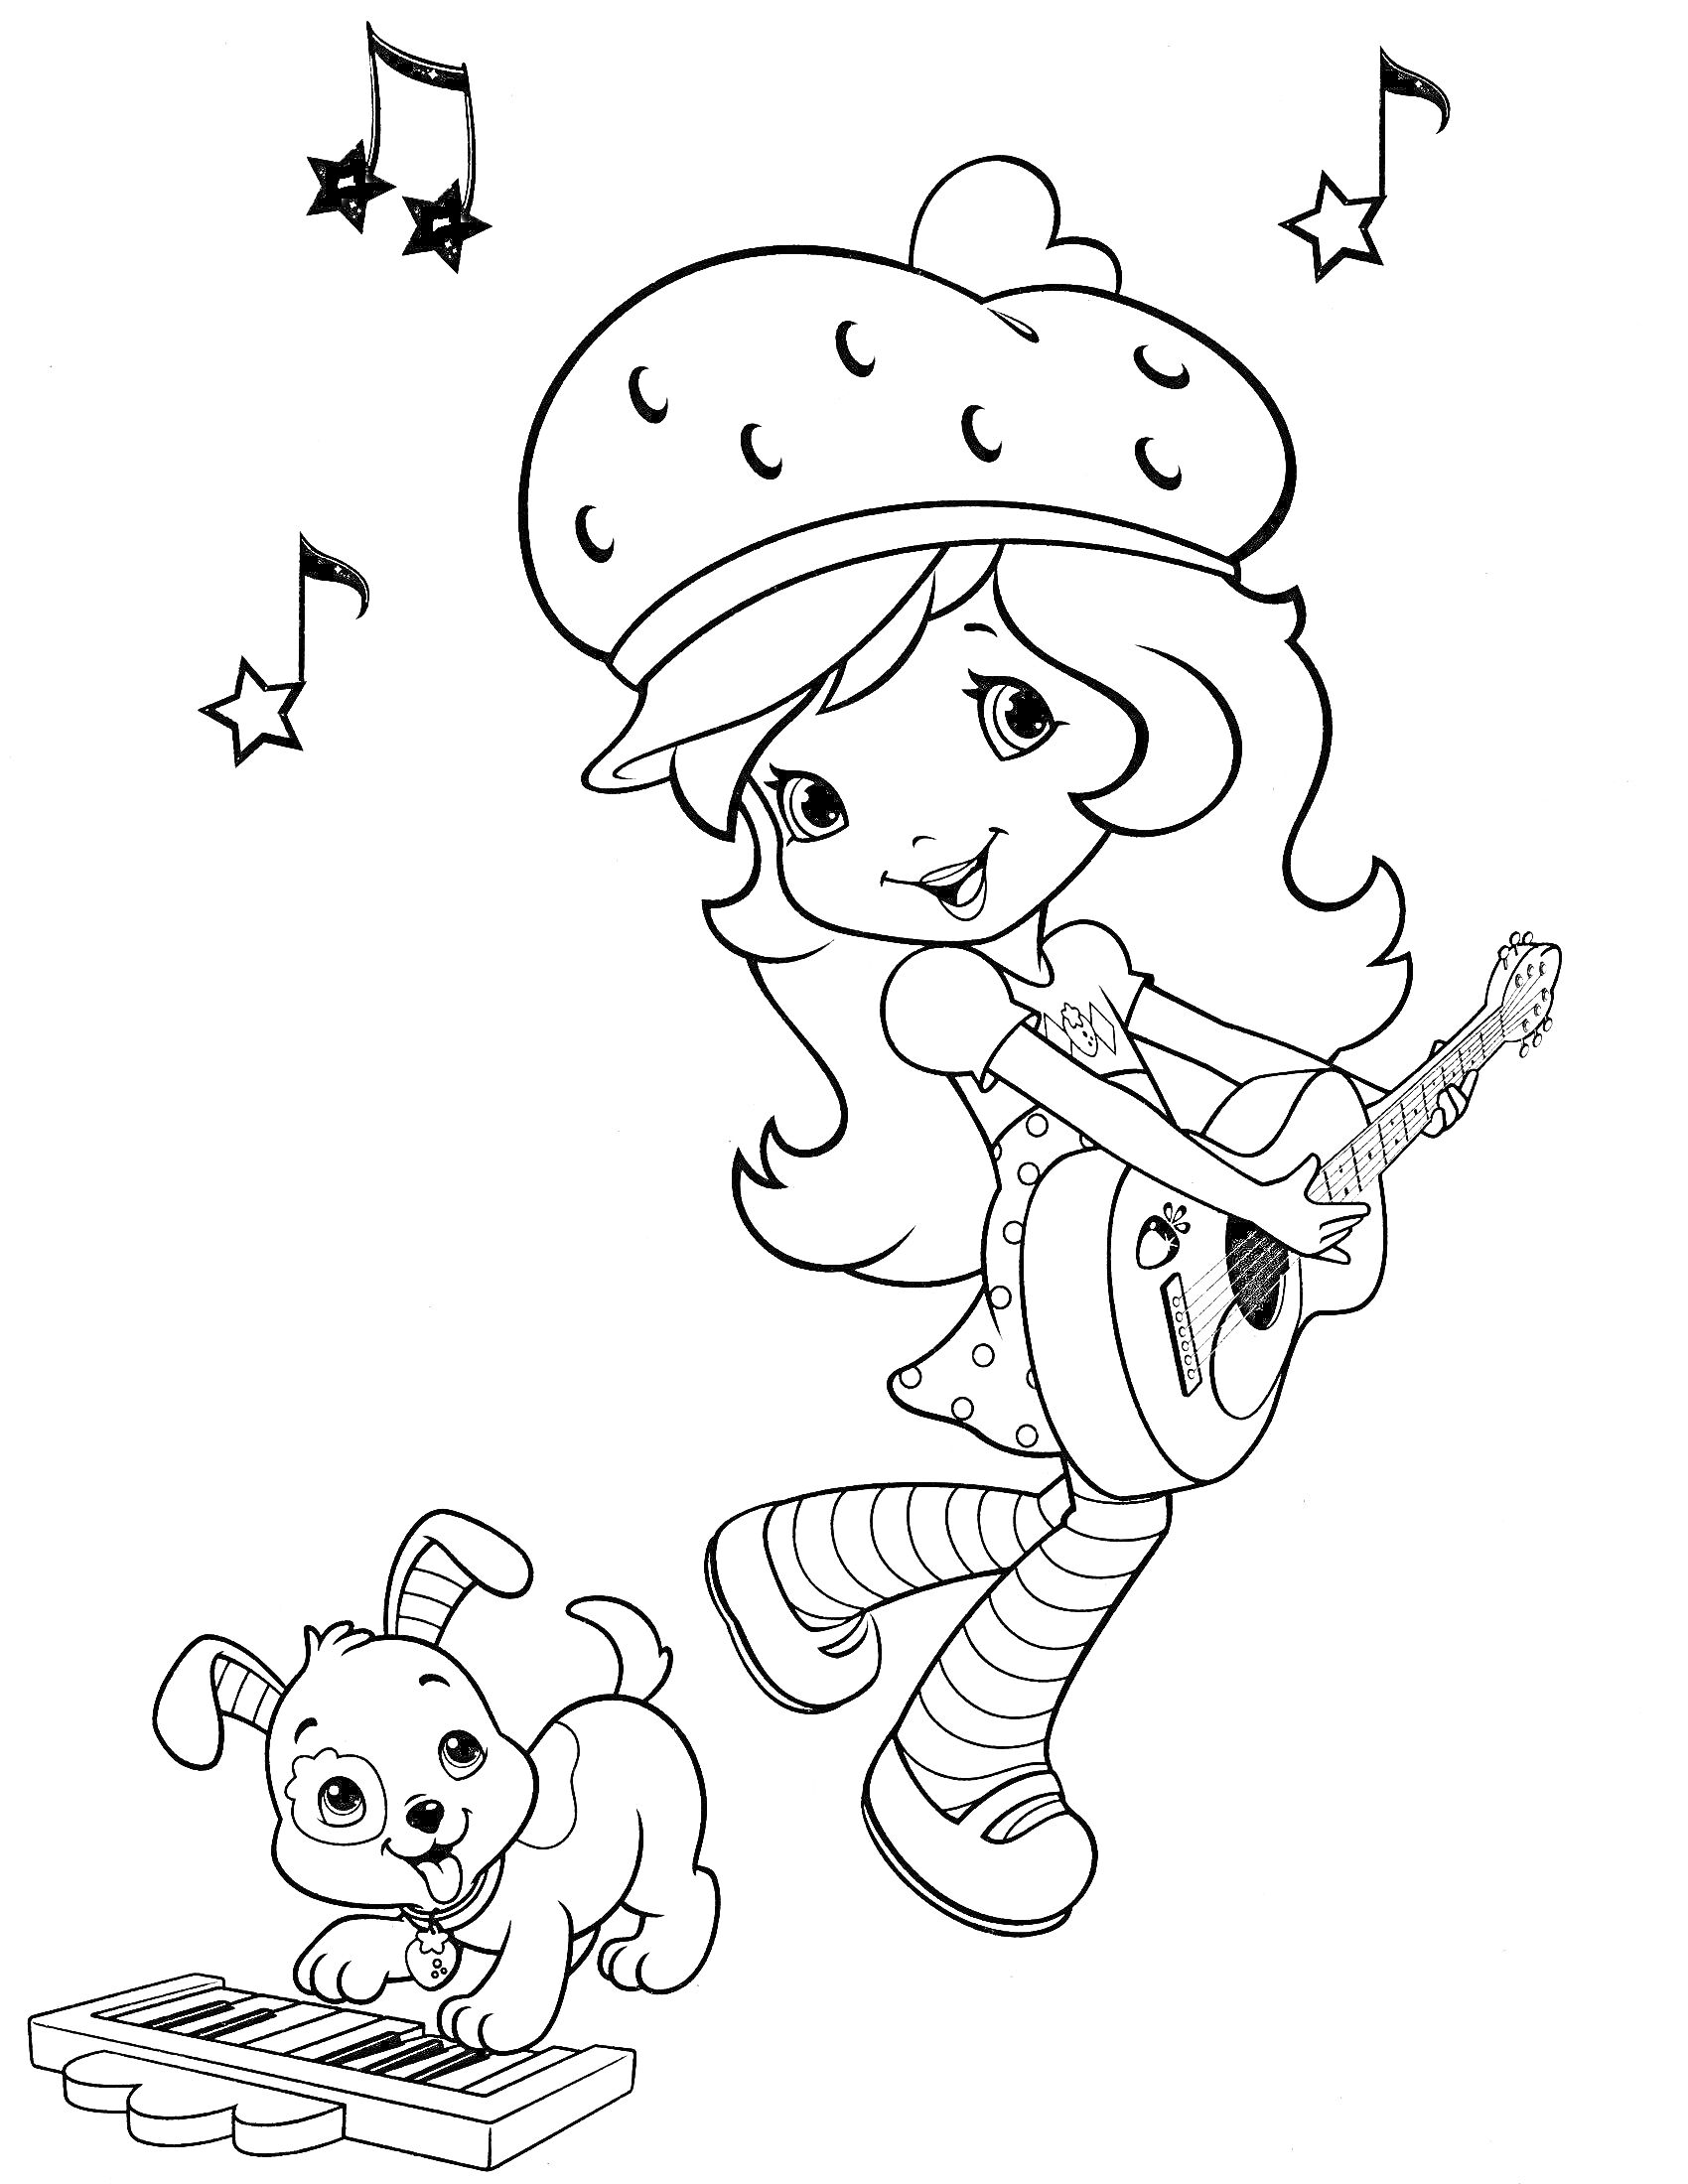 Раскраска Шарлотта Земляничка играет на гитаре, щенок играет на клавишах, ноты и звезды